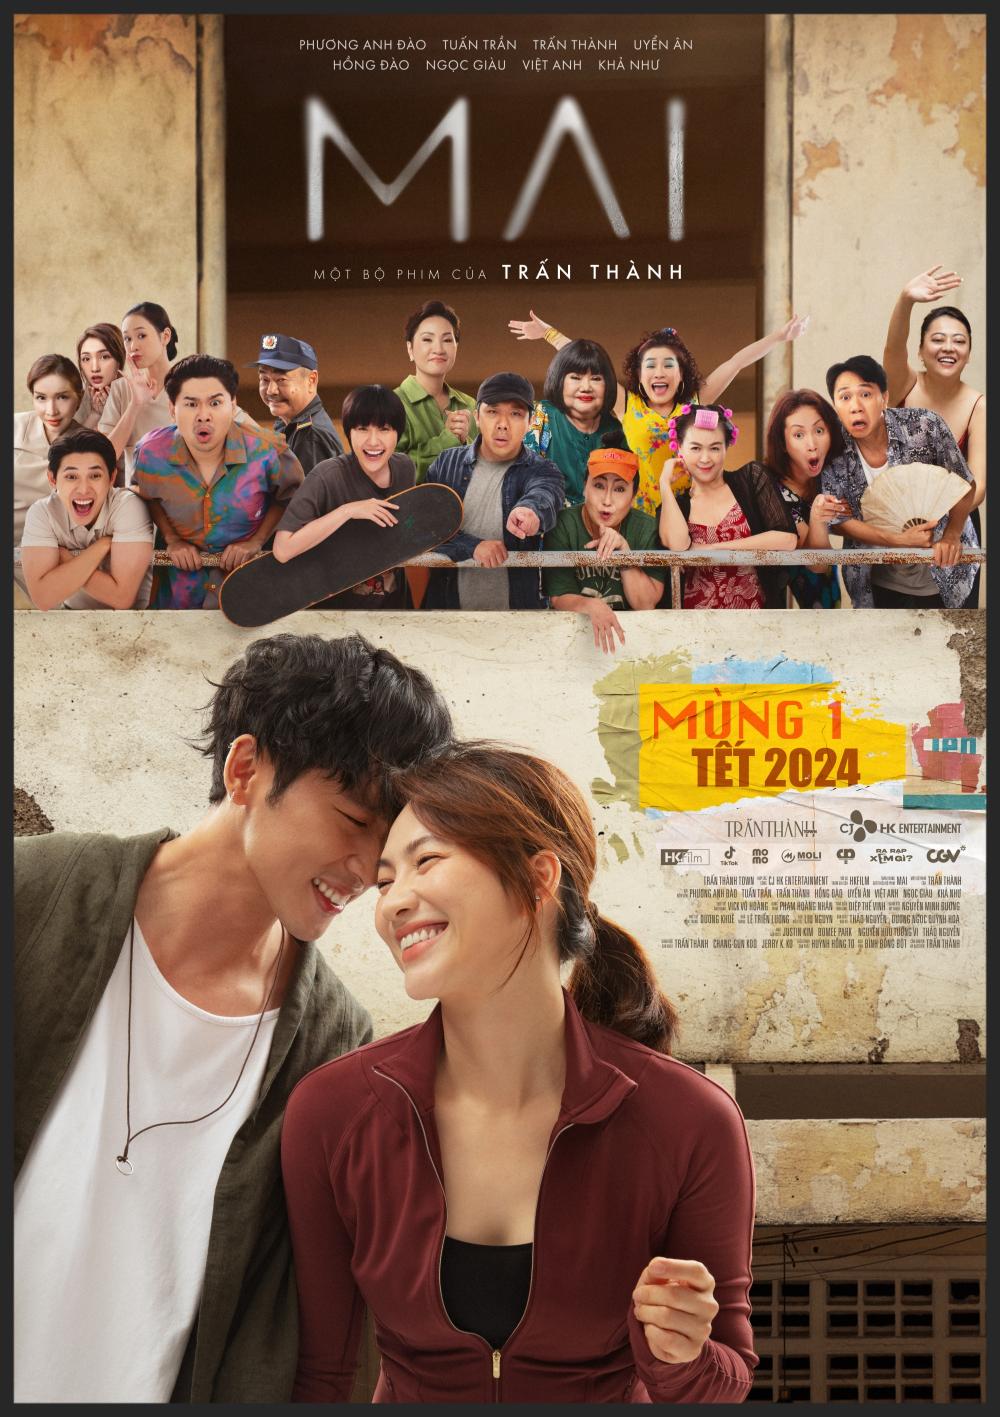 Main Trailer Poster Phim Mai của Trấn Thành tung trailer hé lộ tình chị em giữa Phương Anh Đào   Tuấn Trần